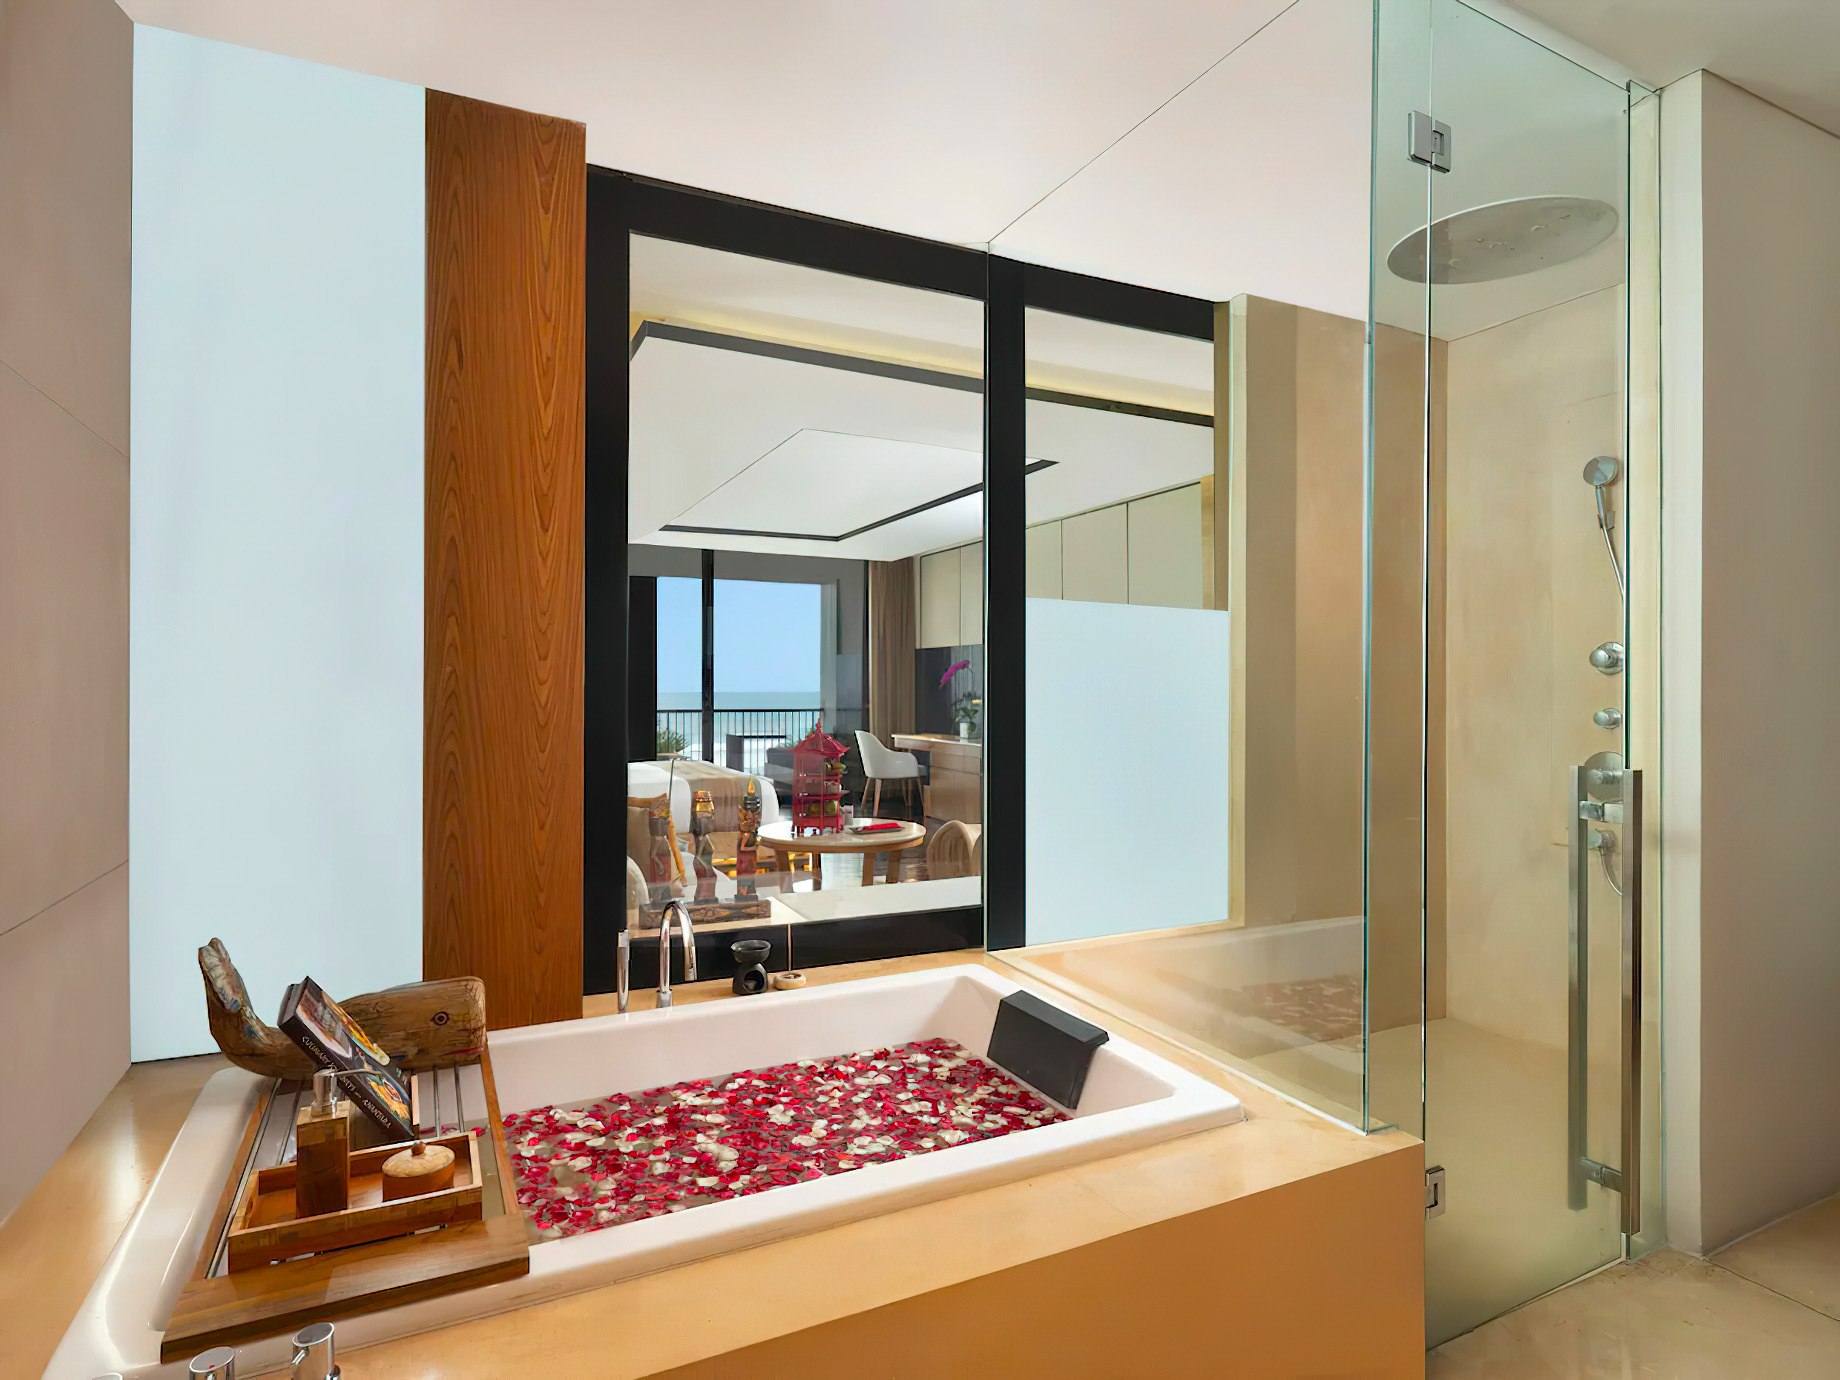 Anantara Seminyak Bali Resort – Bali, Indonesia – Guest Suite Bathroom